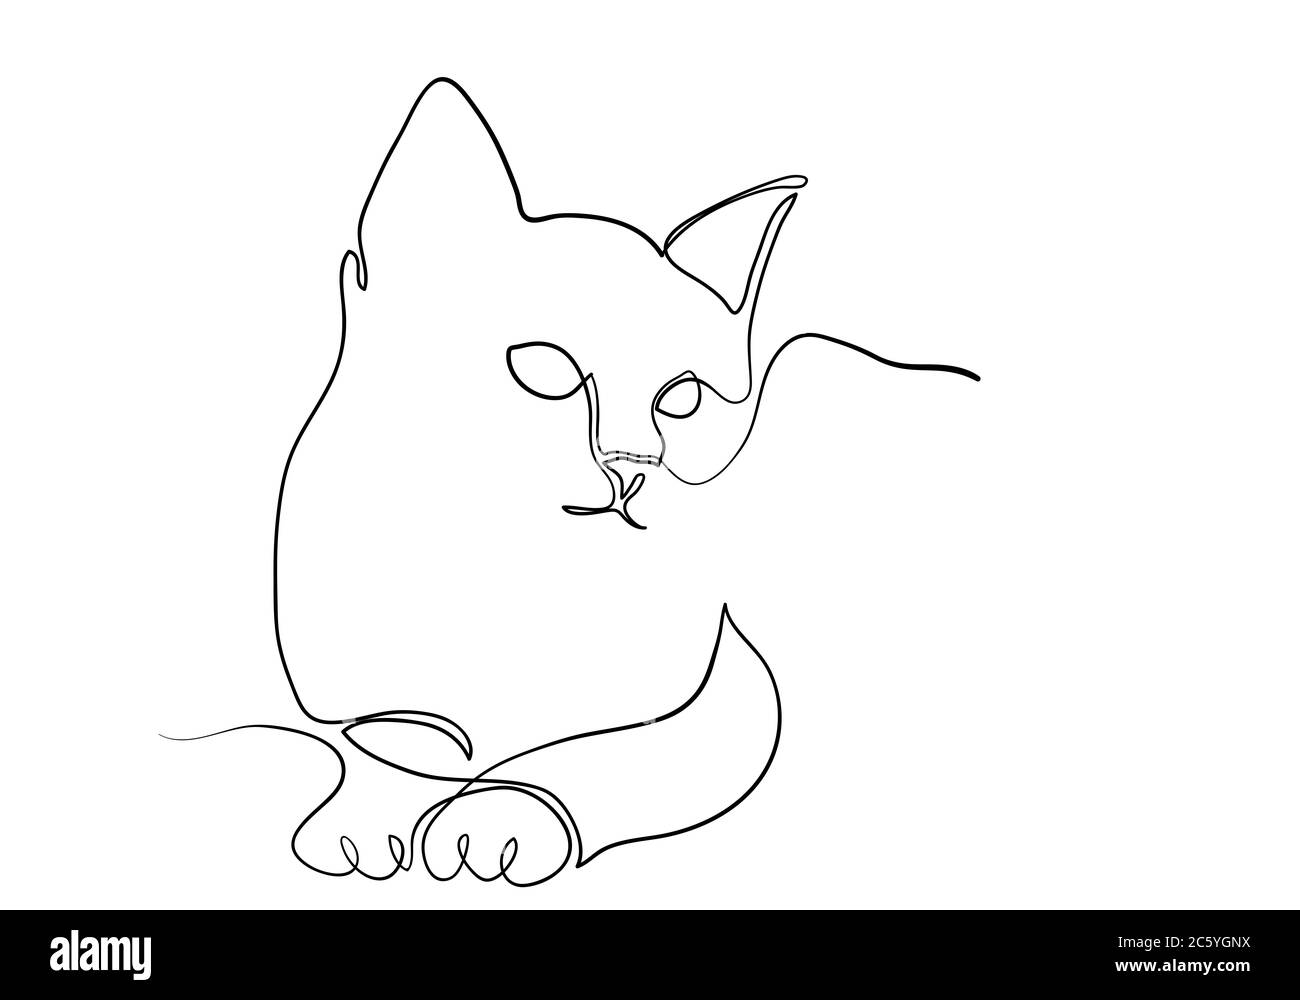 Dessin d'une ligne du chat dans un style minimaliste moderne, dessin d'une ligne unique graphique Banque D'Images